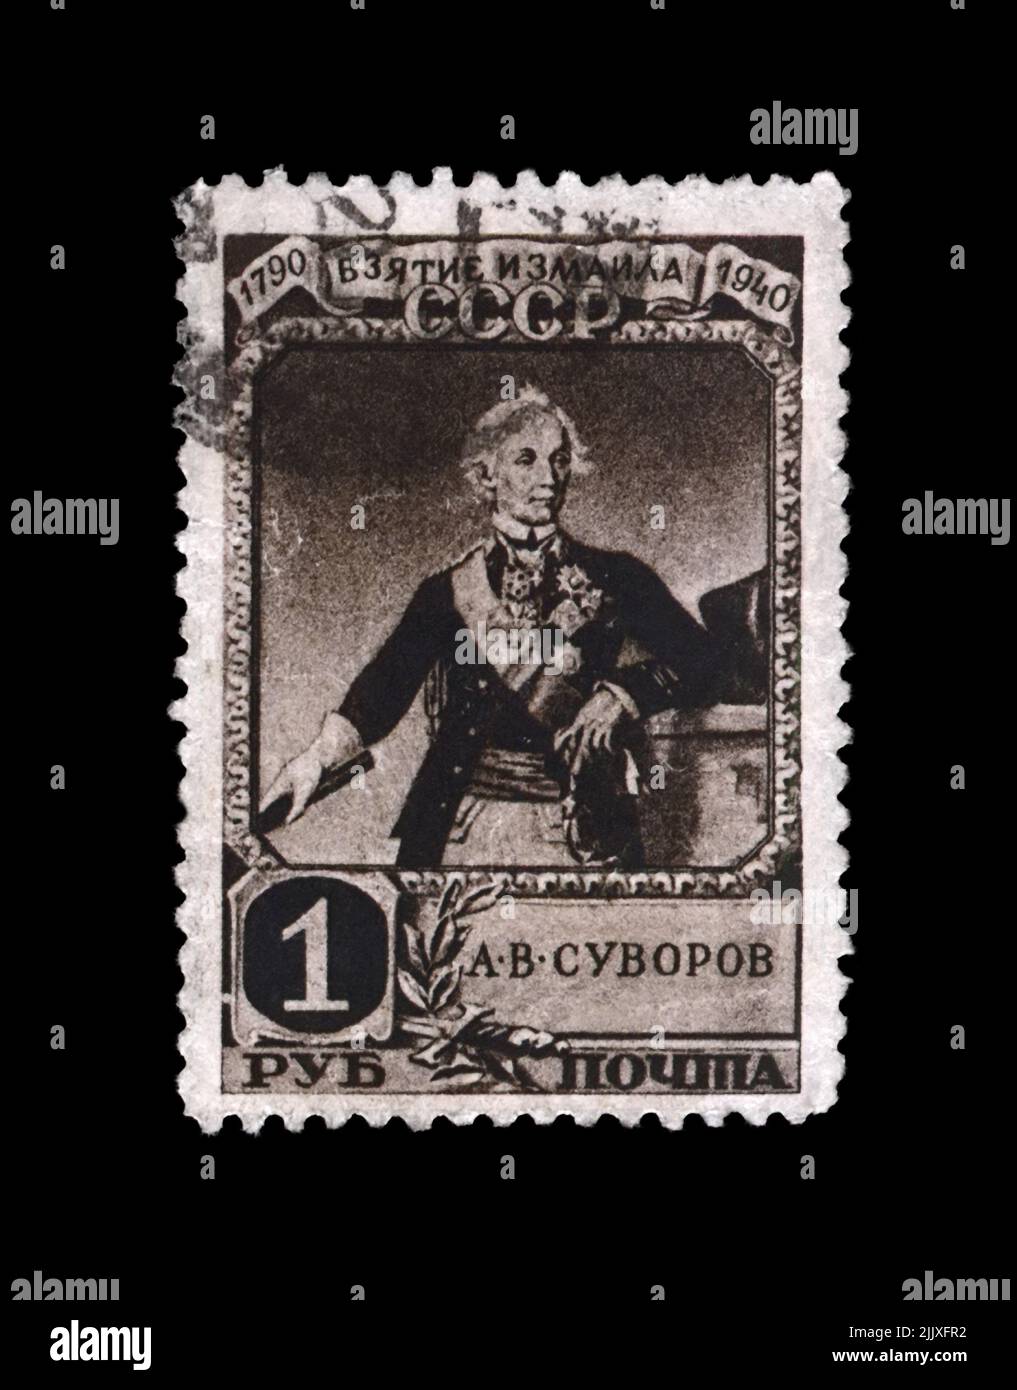 Alexandre Suvorov (1730-1800), célèbre commandant militaire russe, marshal; 150th anniversaire de la prise de la forteresse turque Ismail, vers 1941 Banque D'Images